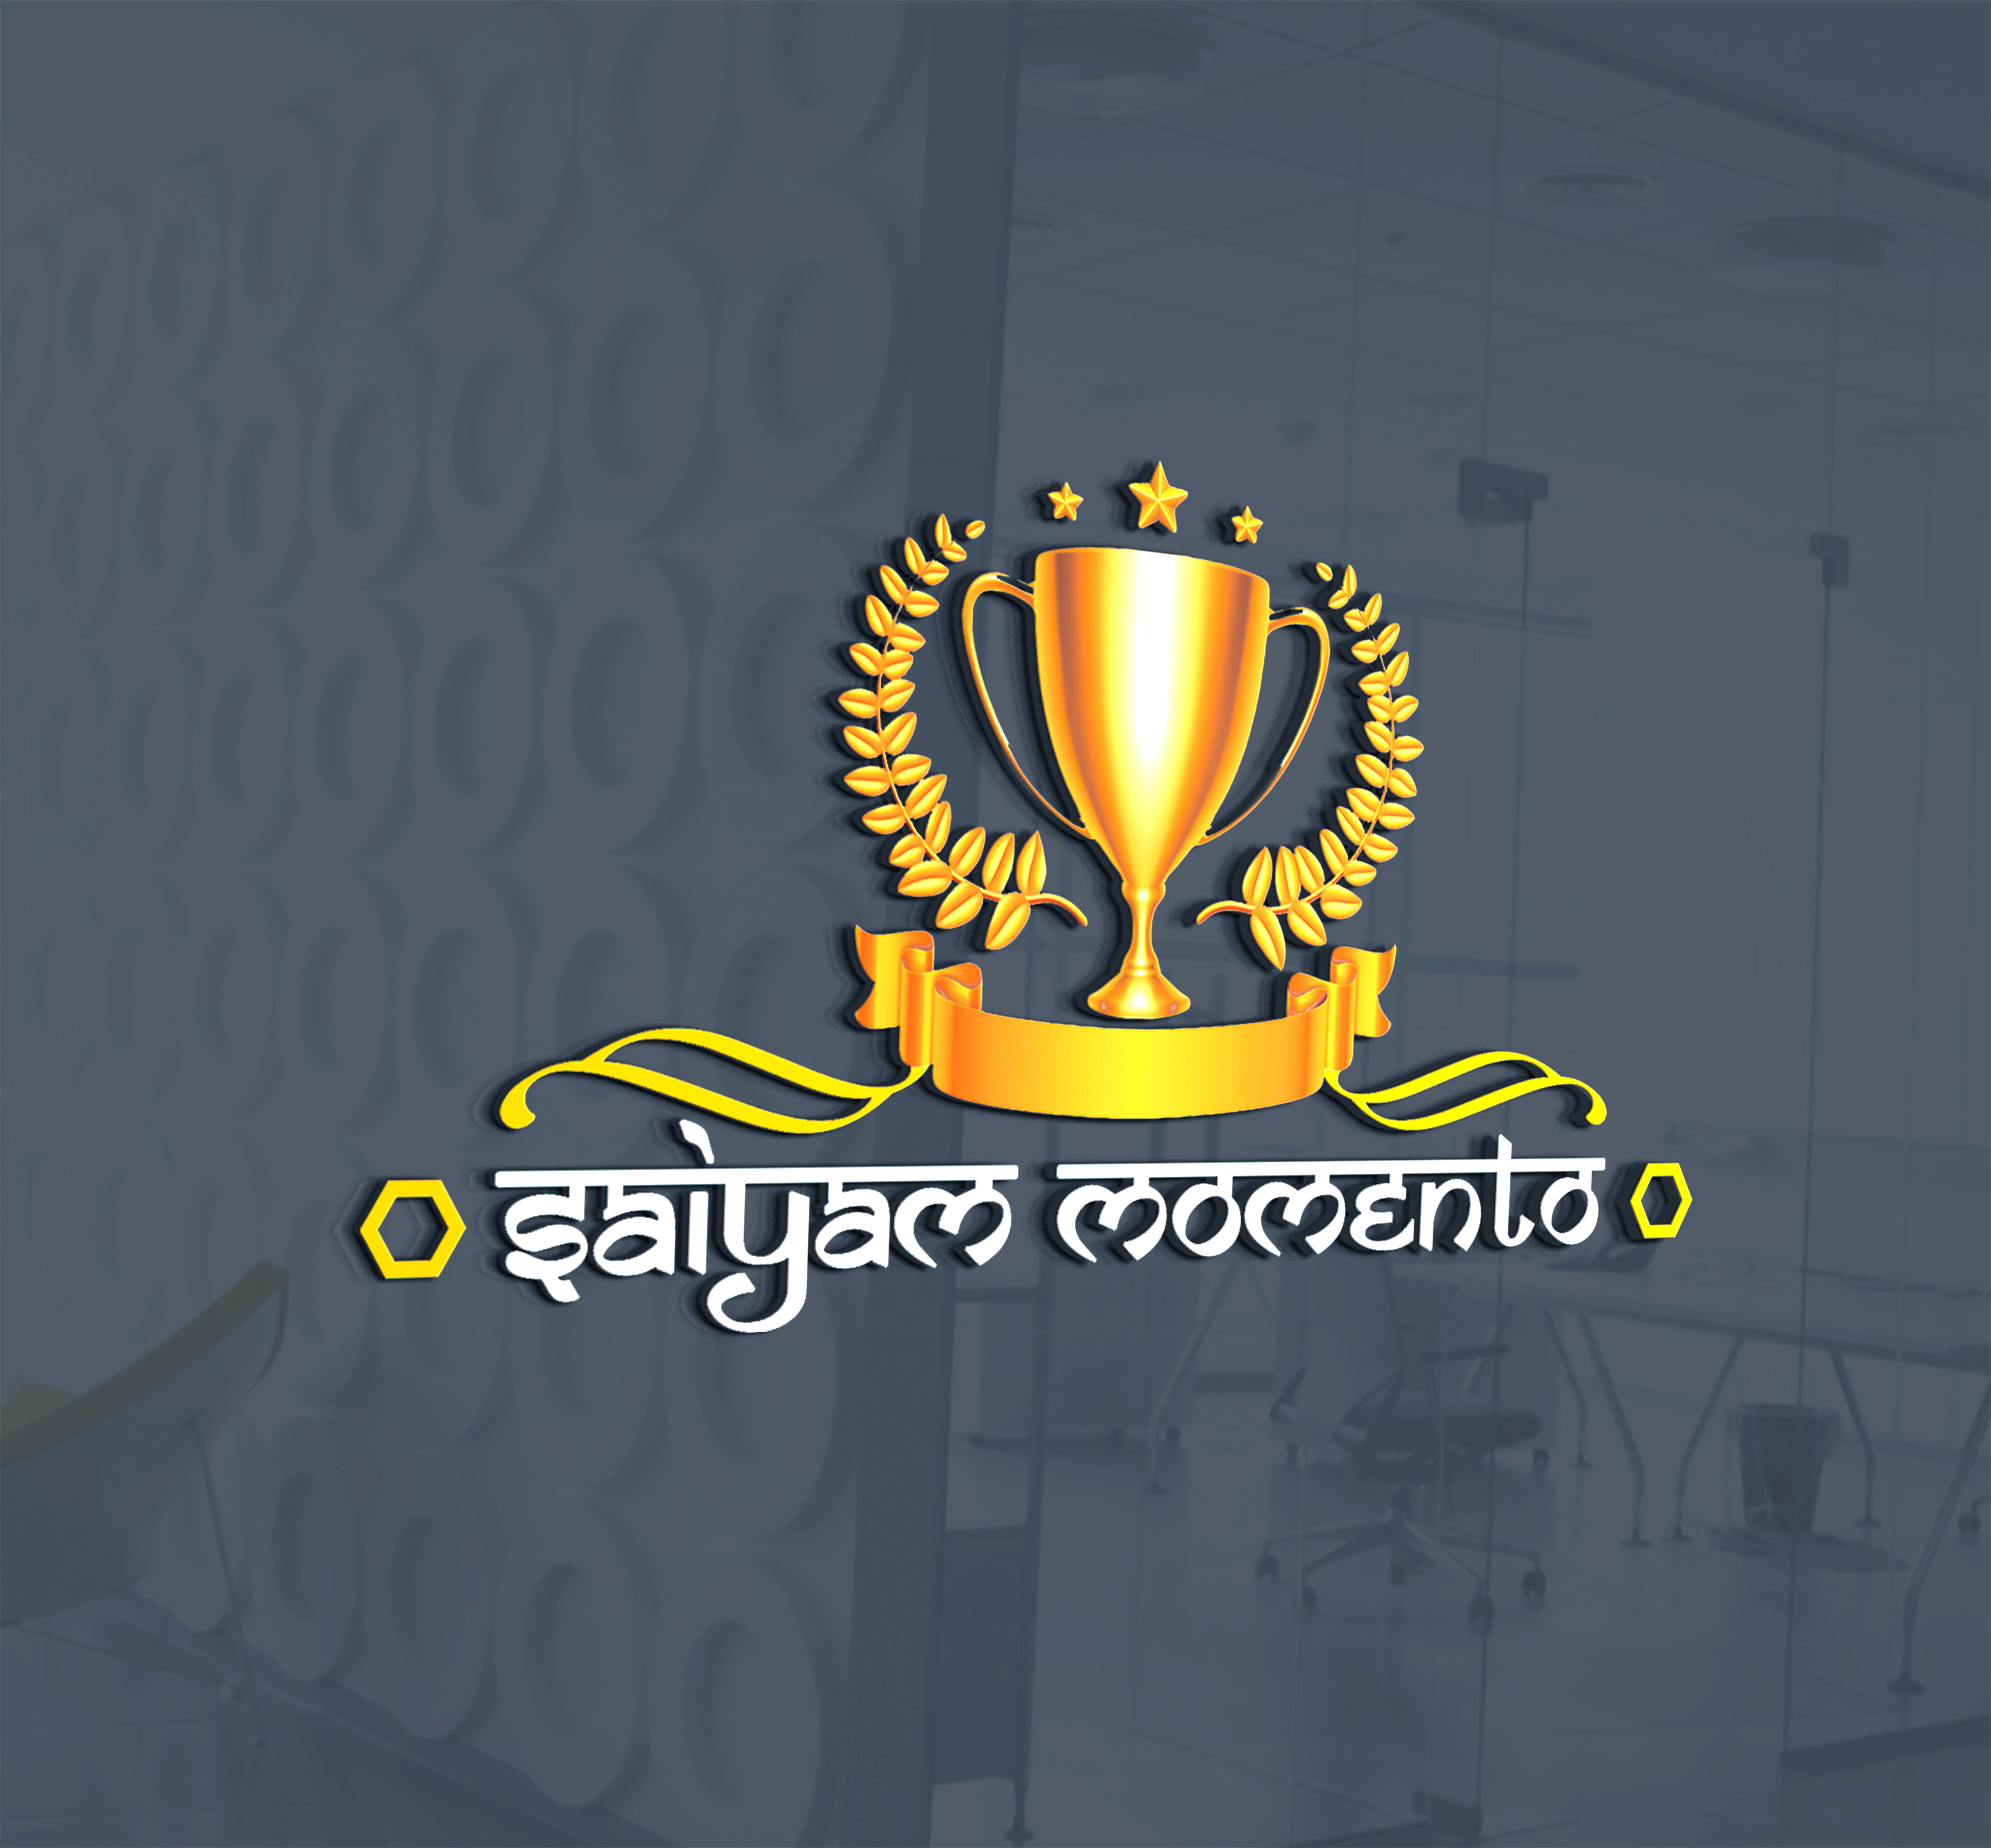 Saiyam Momento & Trophy